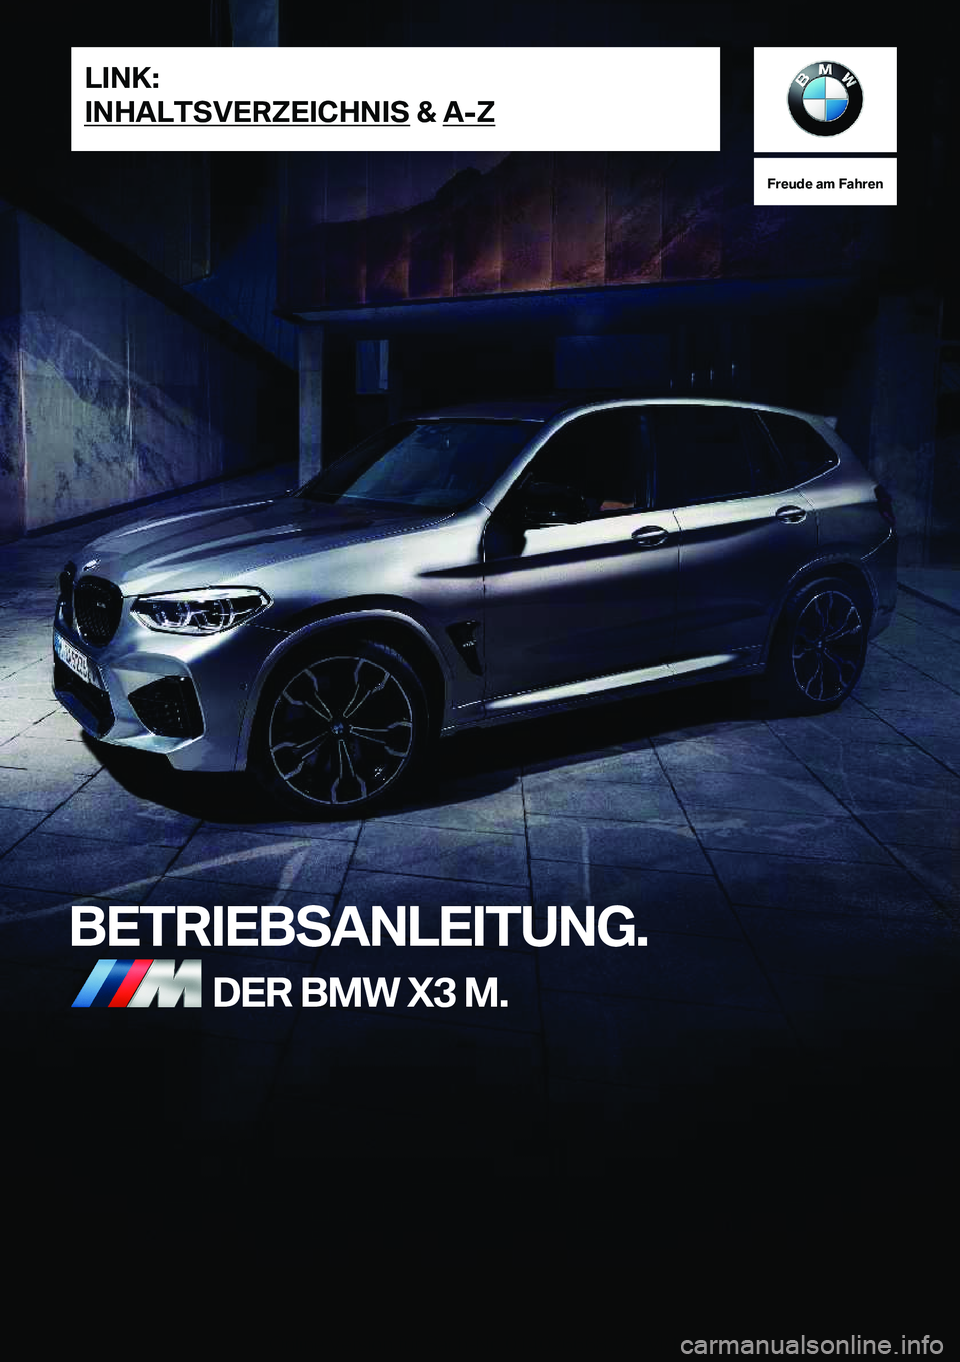 BMW X3 M 2020  Betriebsanleitungen (in German) �F�r�e�u�d�e��a�m��F�a�h�r�e�n
�B�E�T�R�I�E�B�S�A�N�L�E�I�T�U�N�G�.�D�E�R��B�M�W��X�3��M�.�L�I�N�K�:
�I�N�H�A�L�T�S�V�E�R�Z�E�I�C�H�N�I�S��&��A�-�Z�O�n�l�i�n�e��V�e�r�s�i�o�n��f�